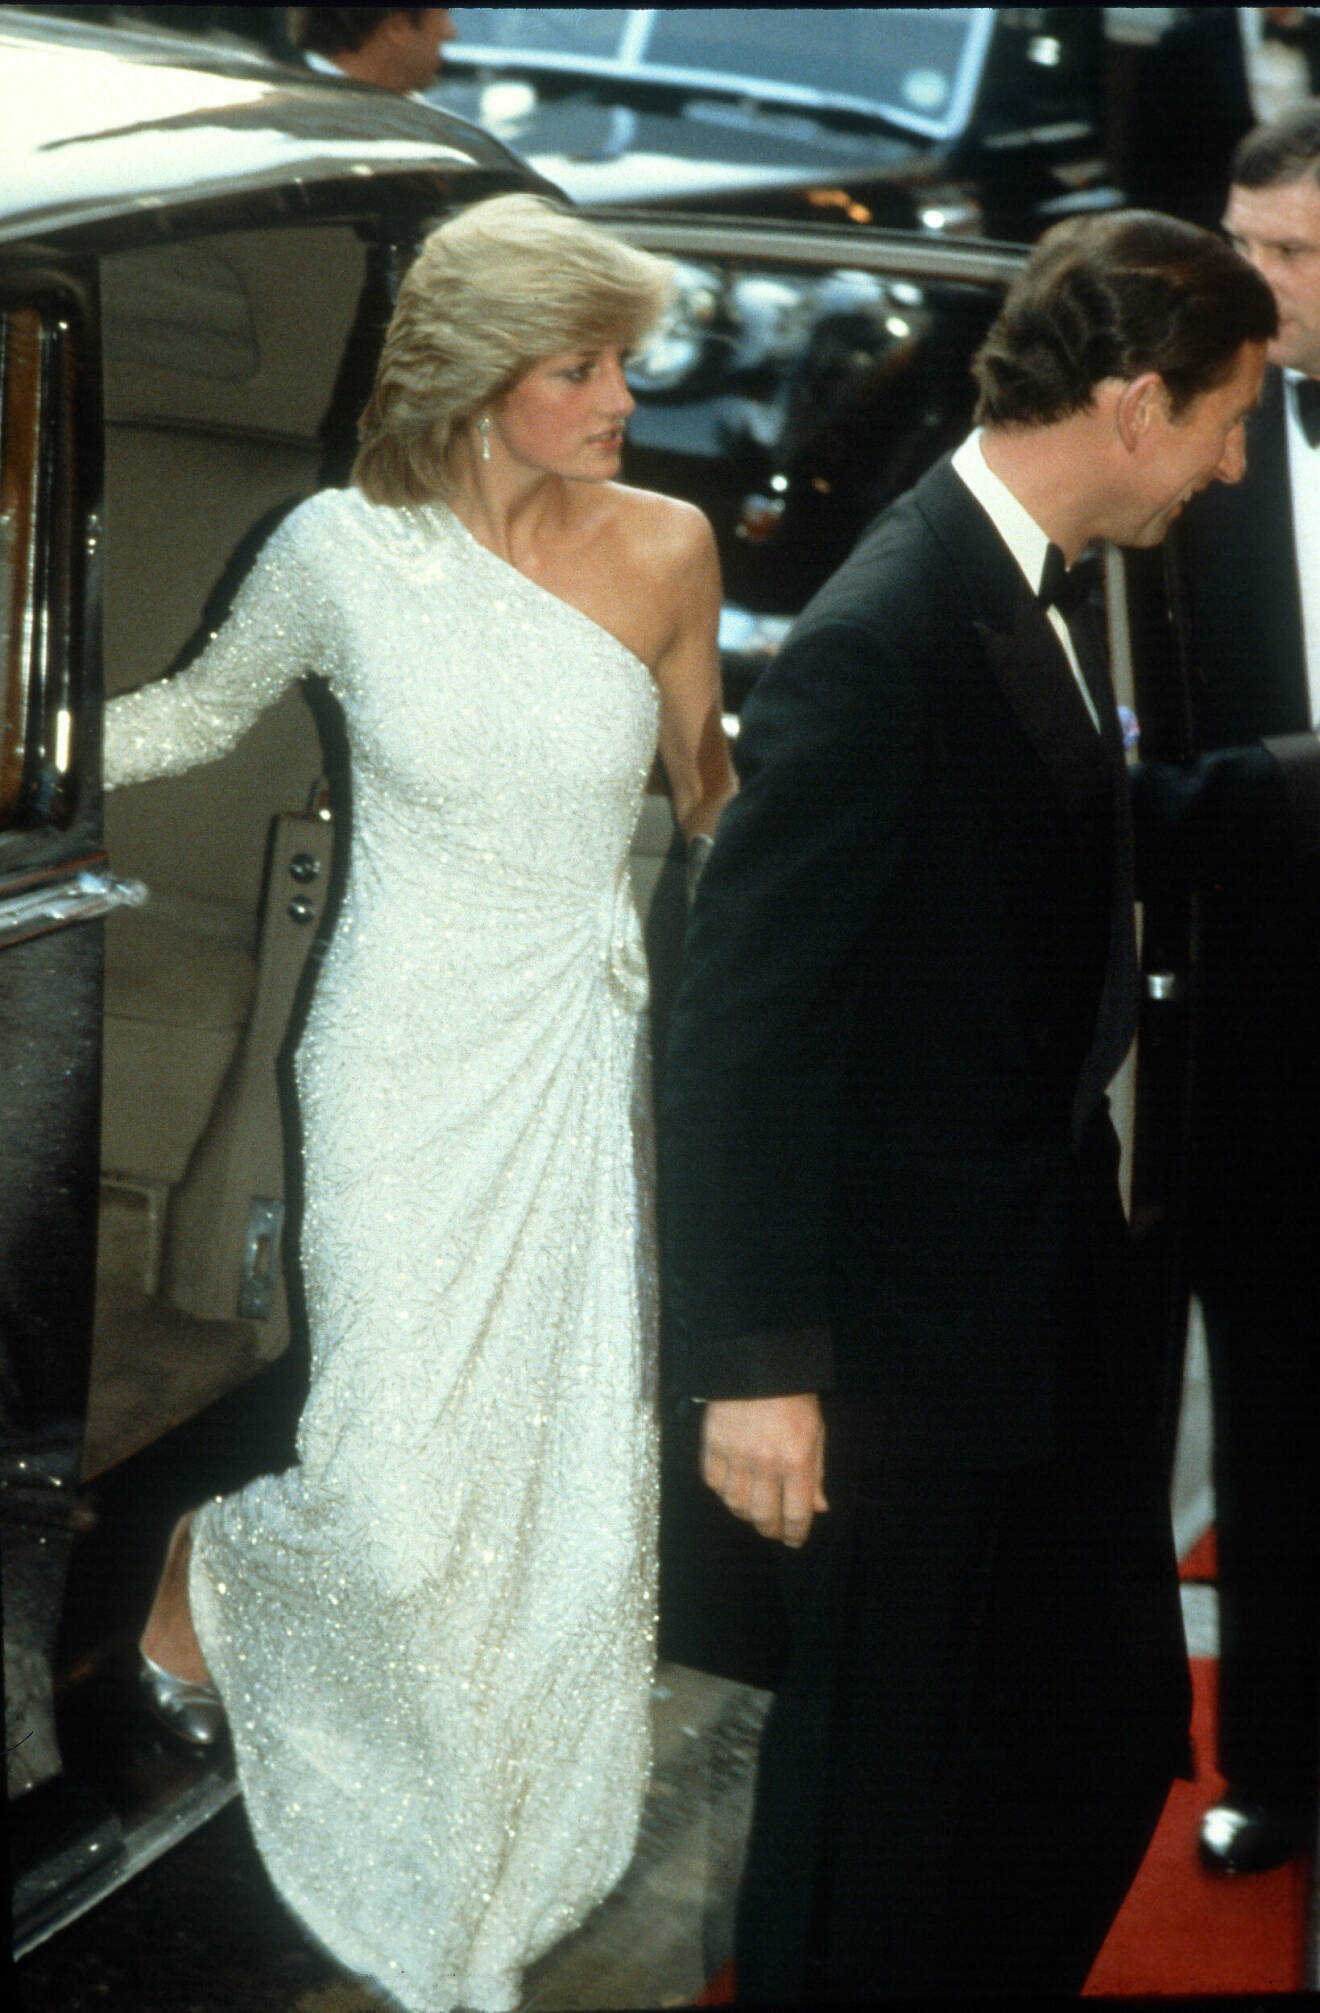 Diana i glittrande galaklänning i one shoulder-modell, 1983.